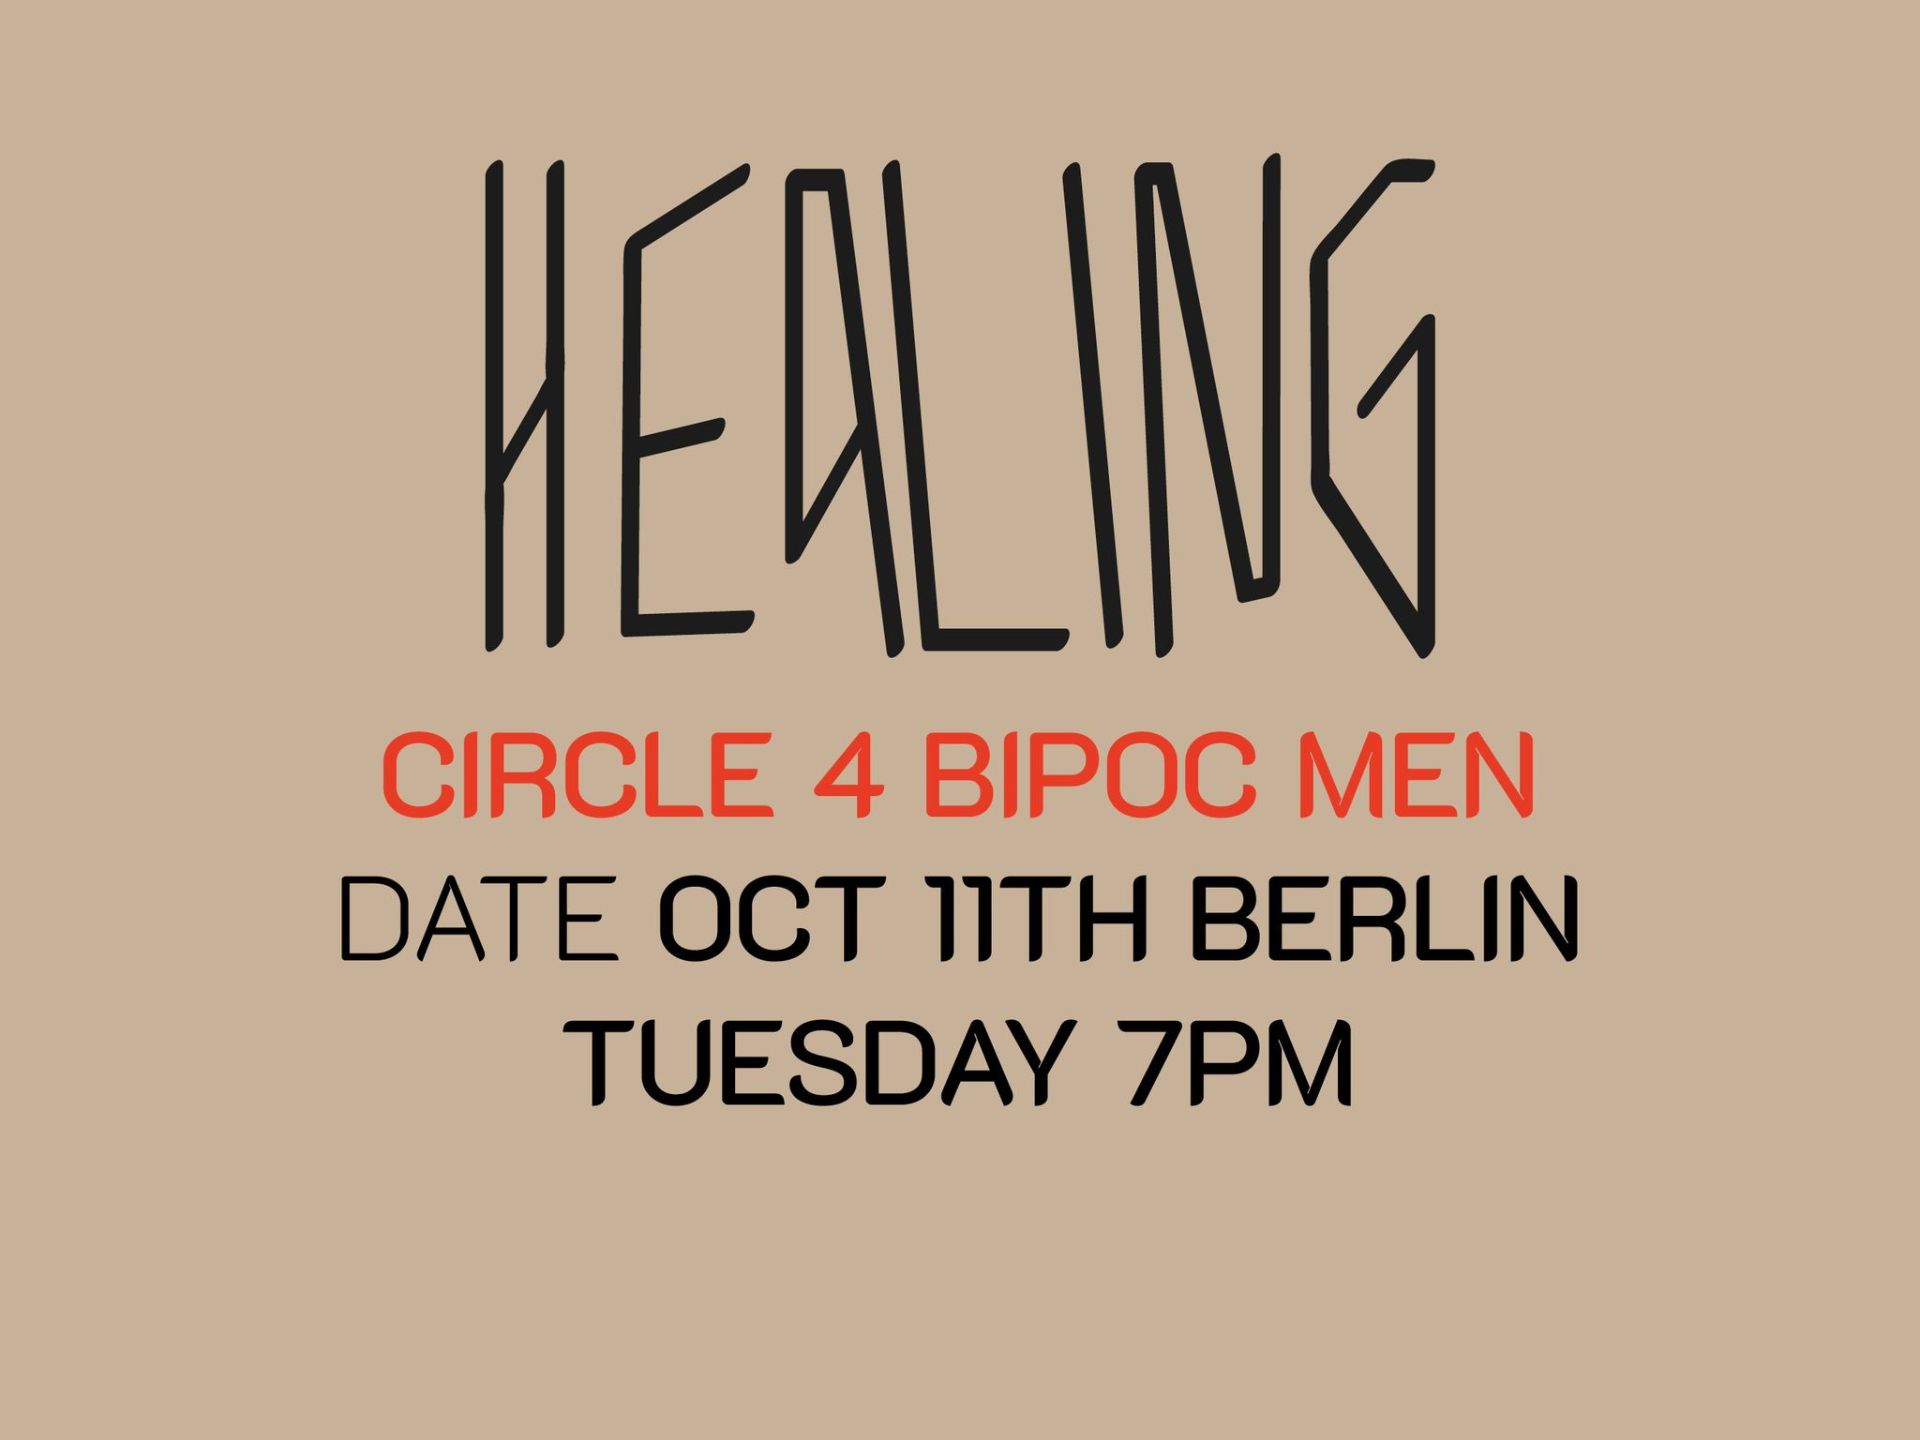 Healing Circle 4 BIPOC Men